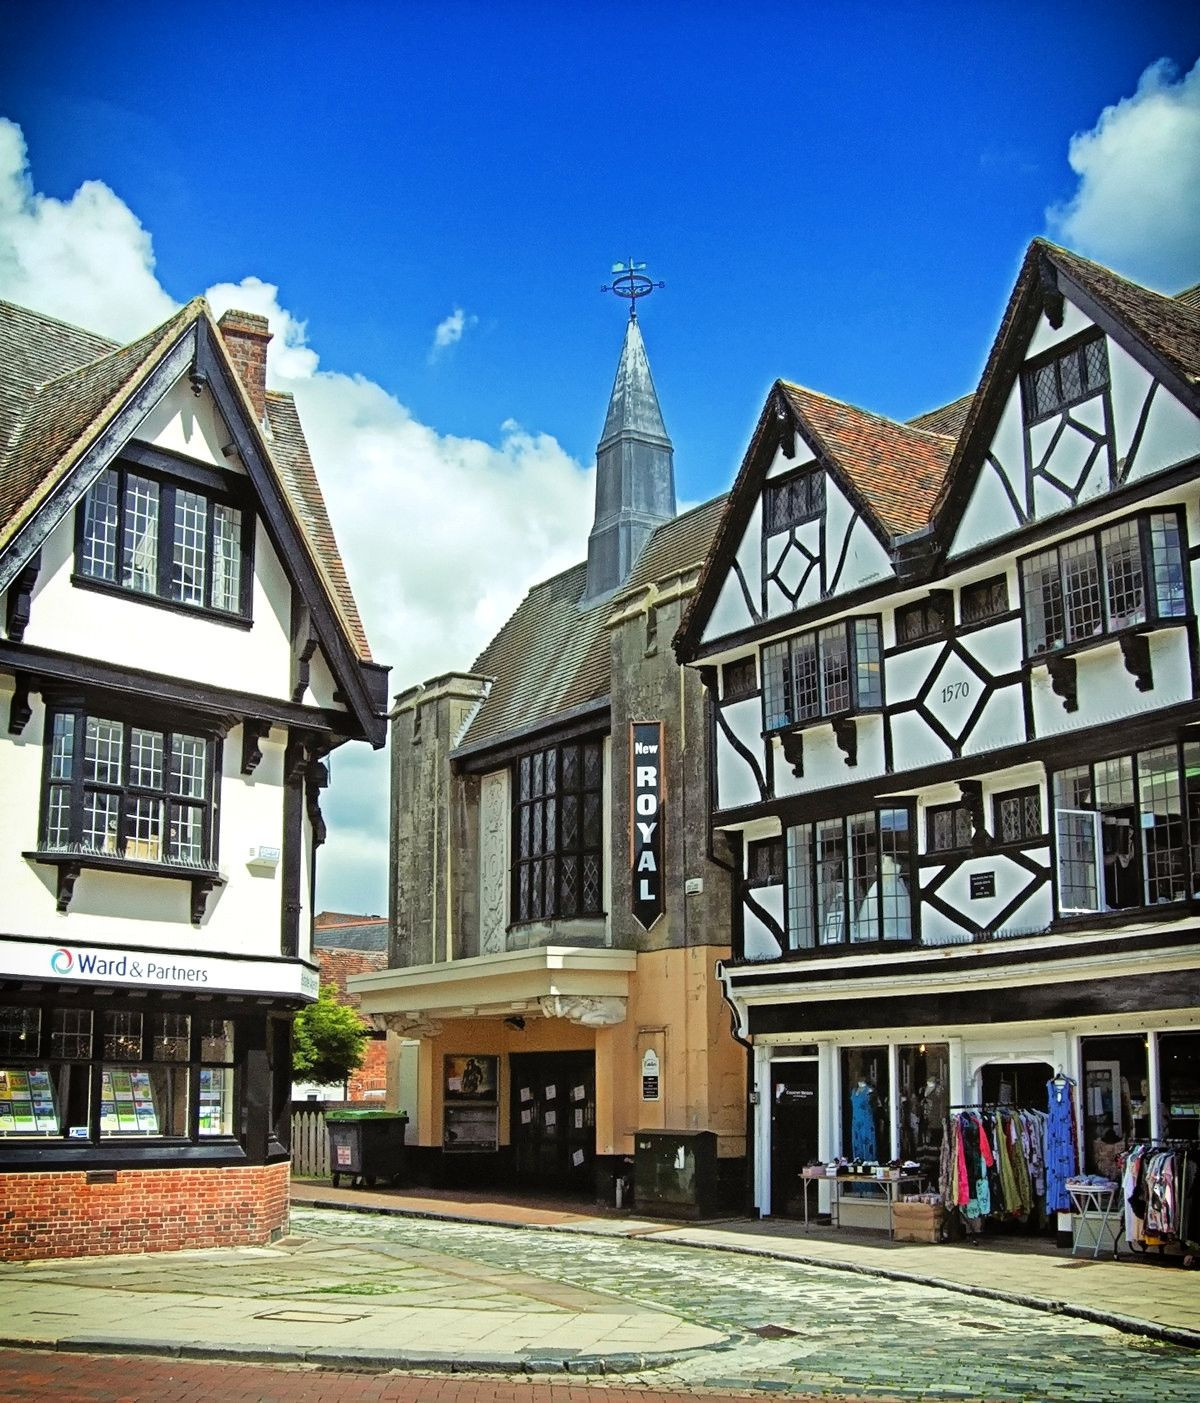 Elizabethan Tudor listed buildings in Faversham, Kent. Credit Jim Linwood